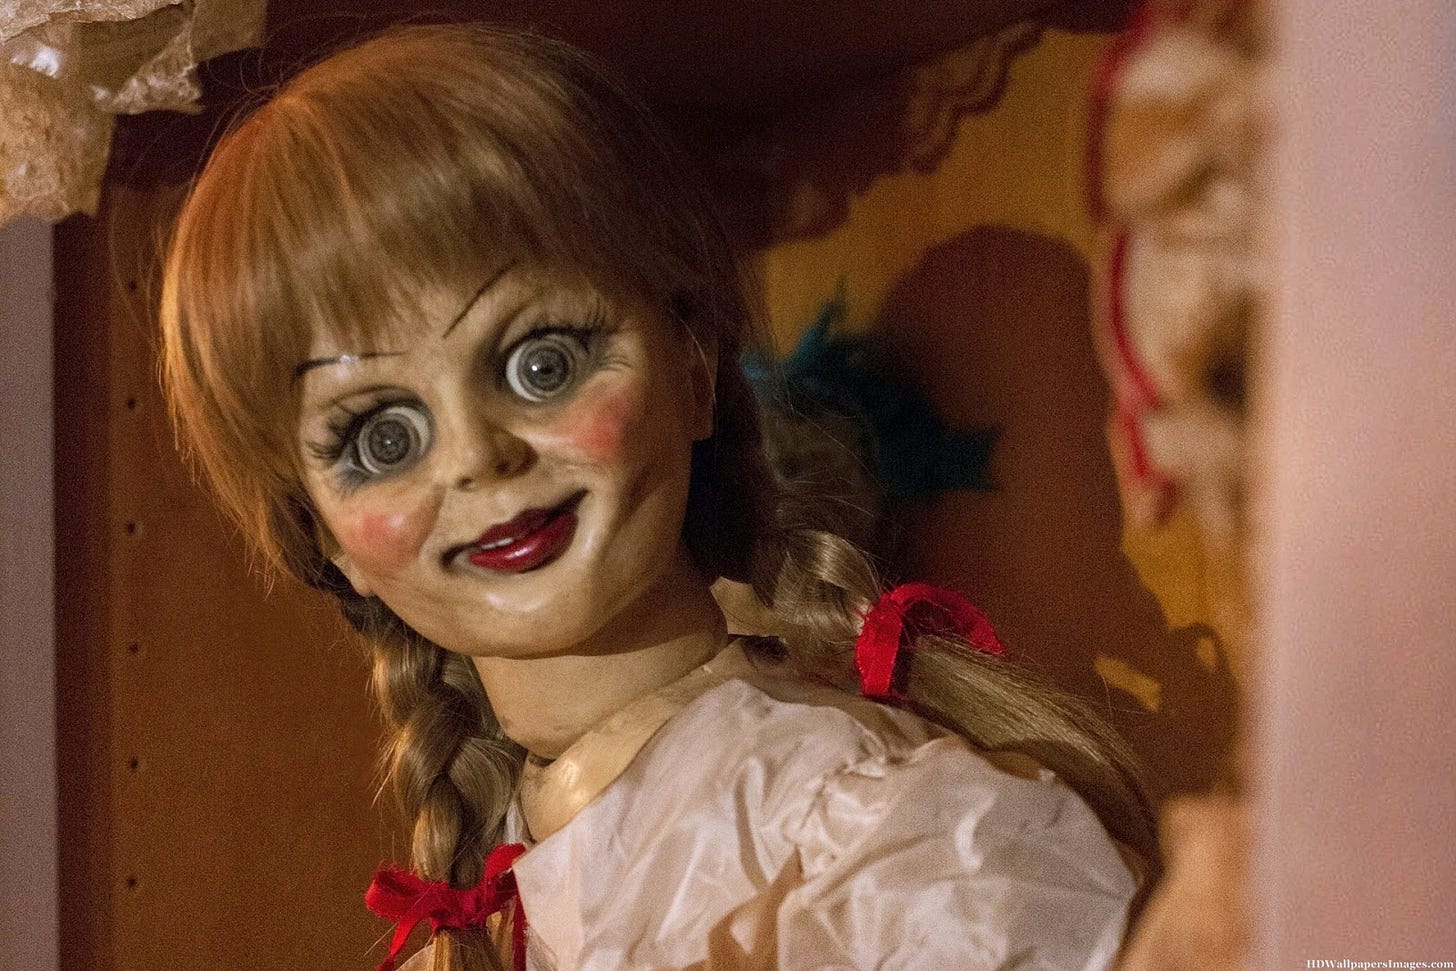 Foto di Annabelle, la bambola indemoniata del film. Ha capelli rossi raccolti in due trecce e una faccia spaventosa